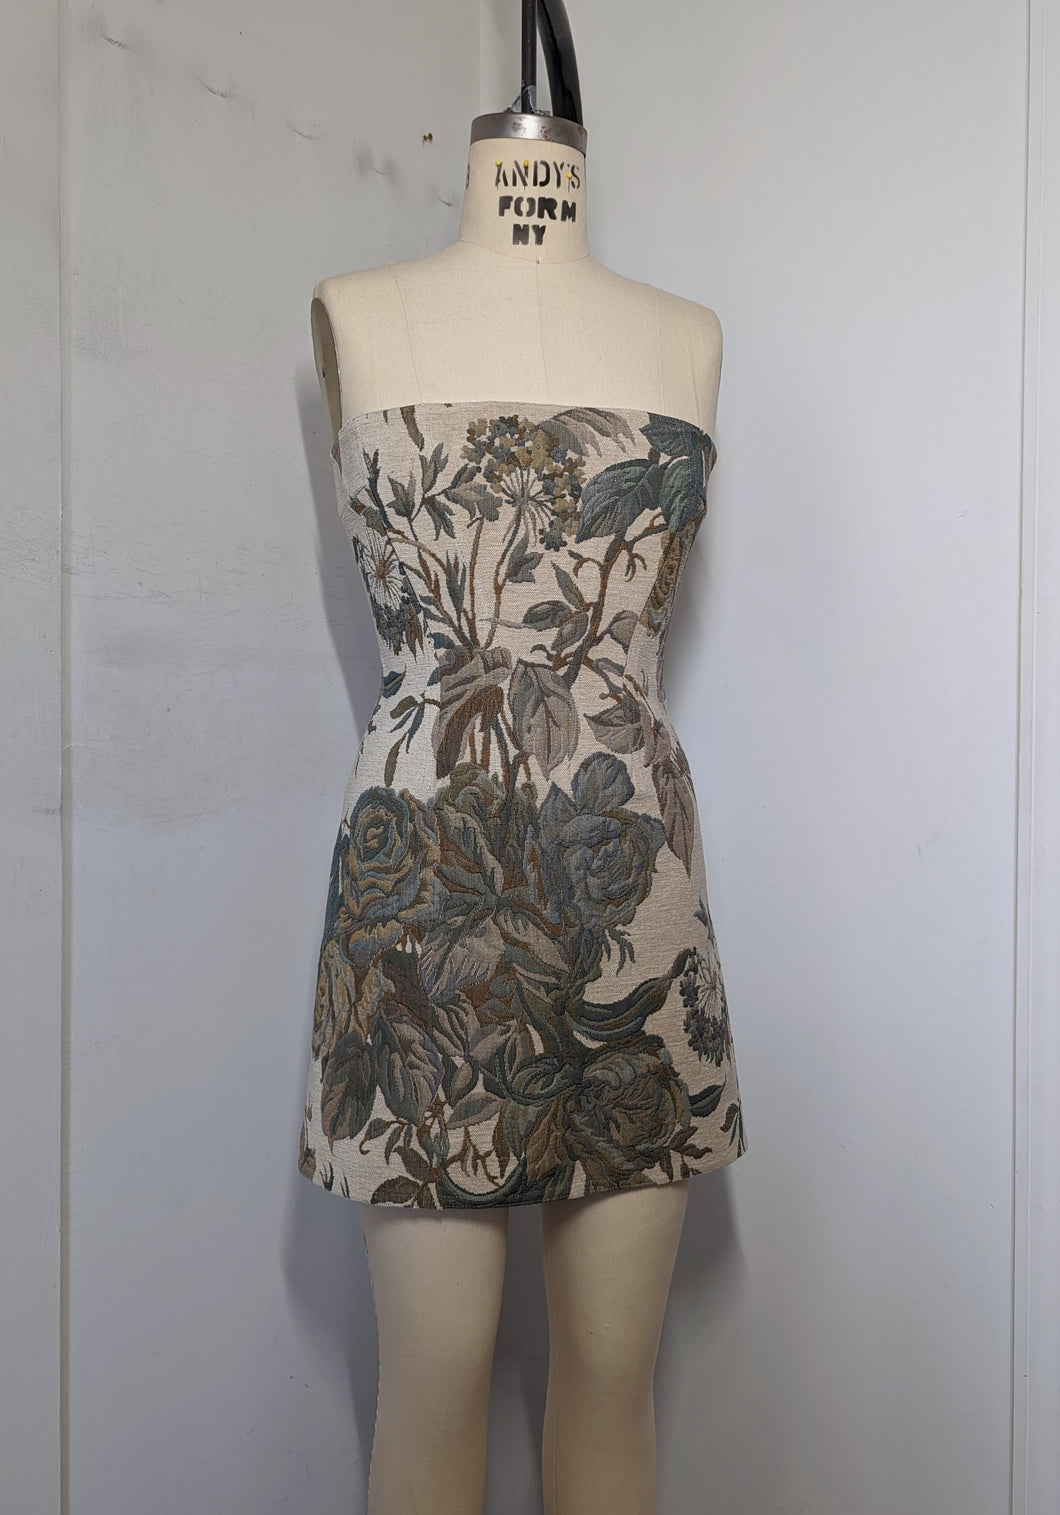 Vintage Upholstery Dress - Size 8-10